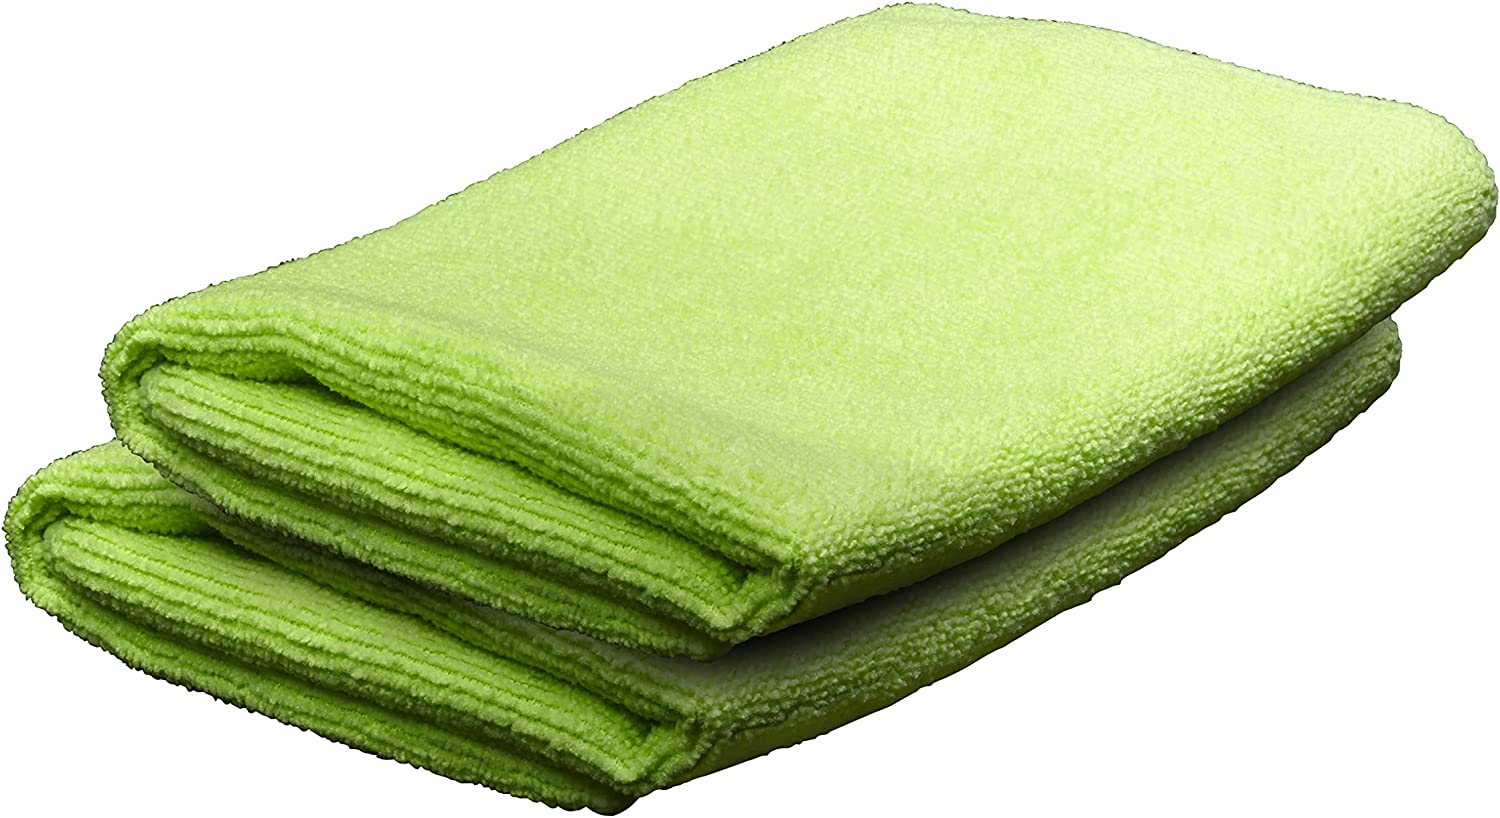 Green Microfiber Towel - 2 Pack